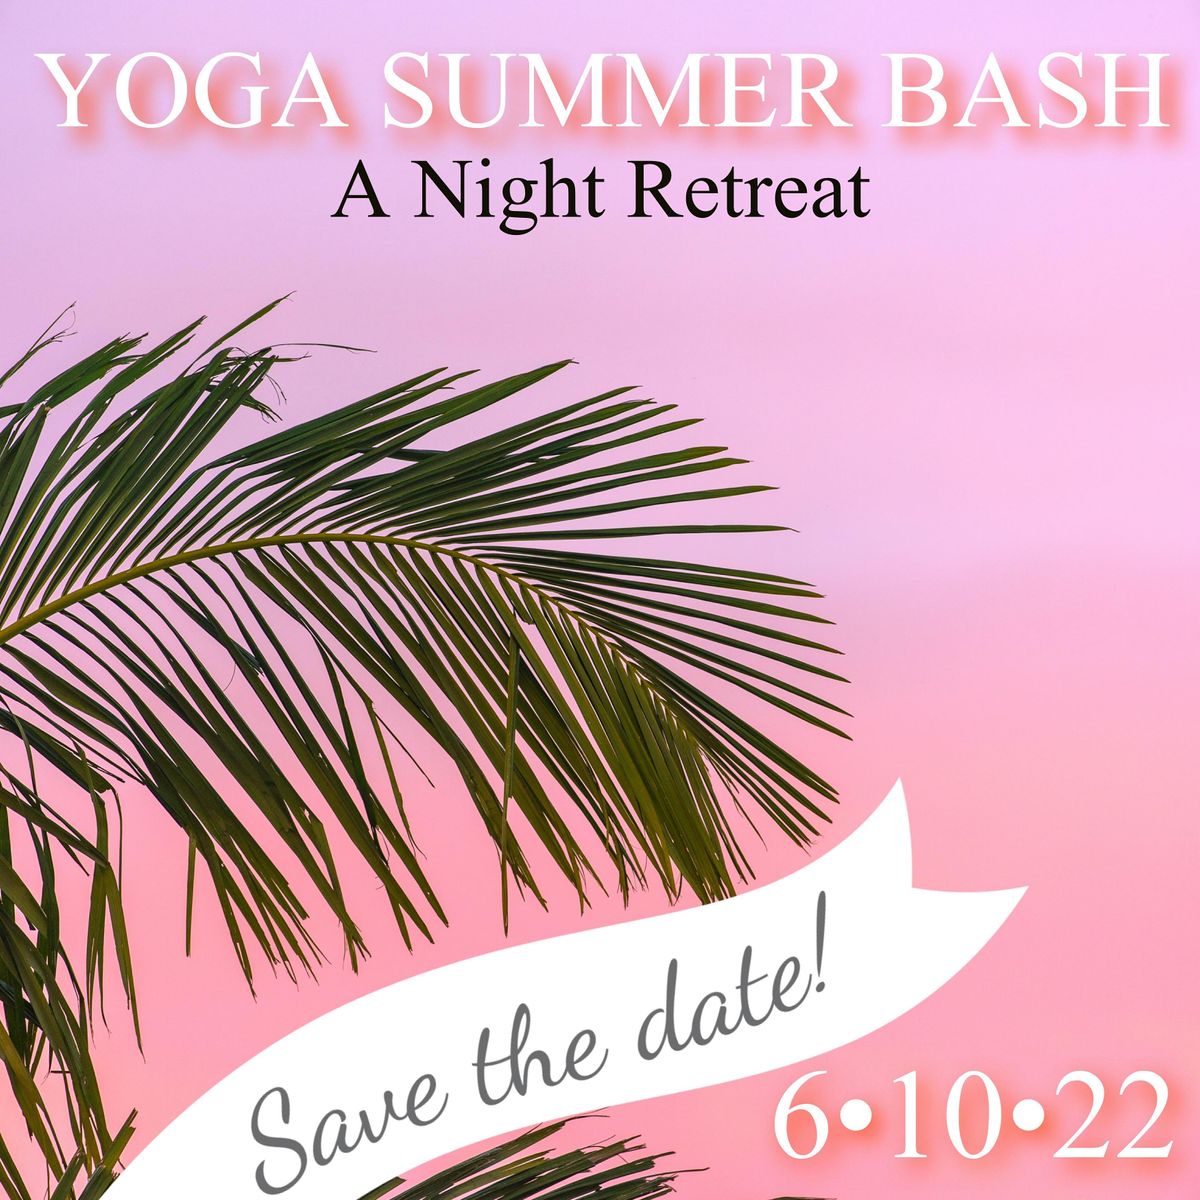 A Yoga Summer Bash: A Night Retreat by Free Yourself Yoga